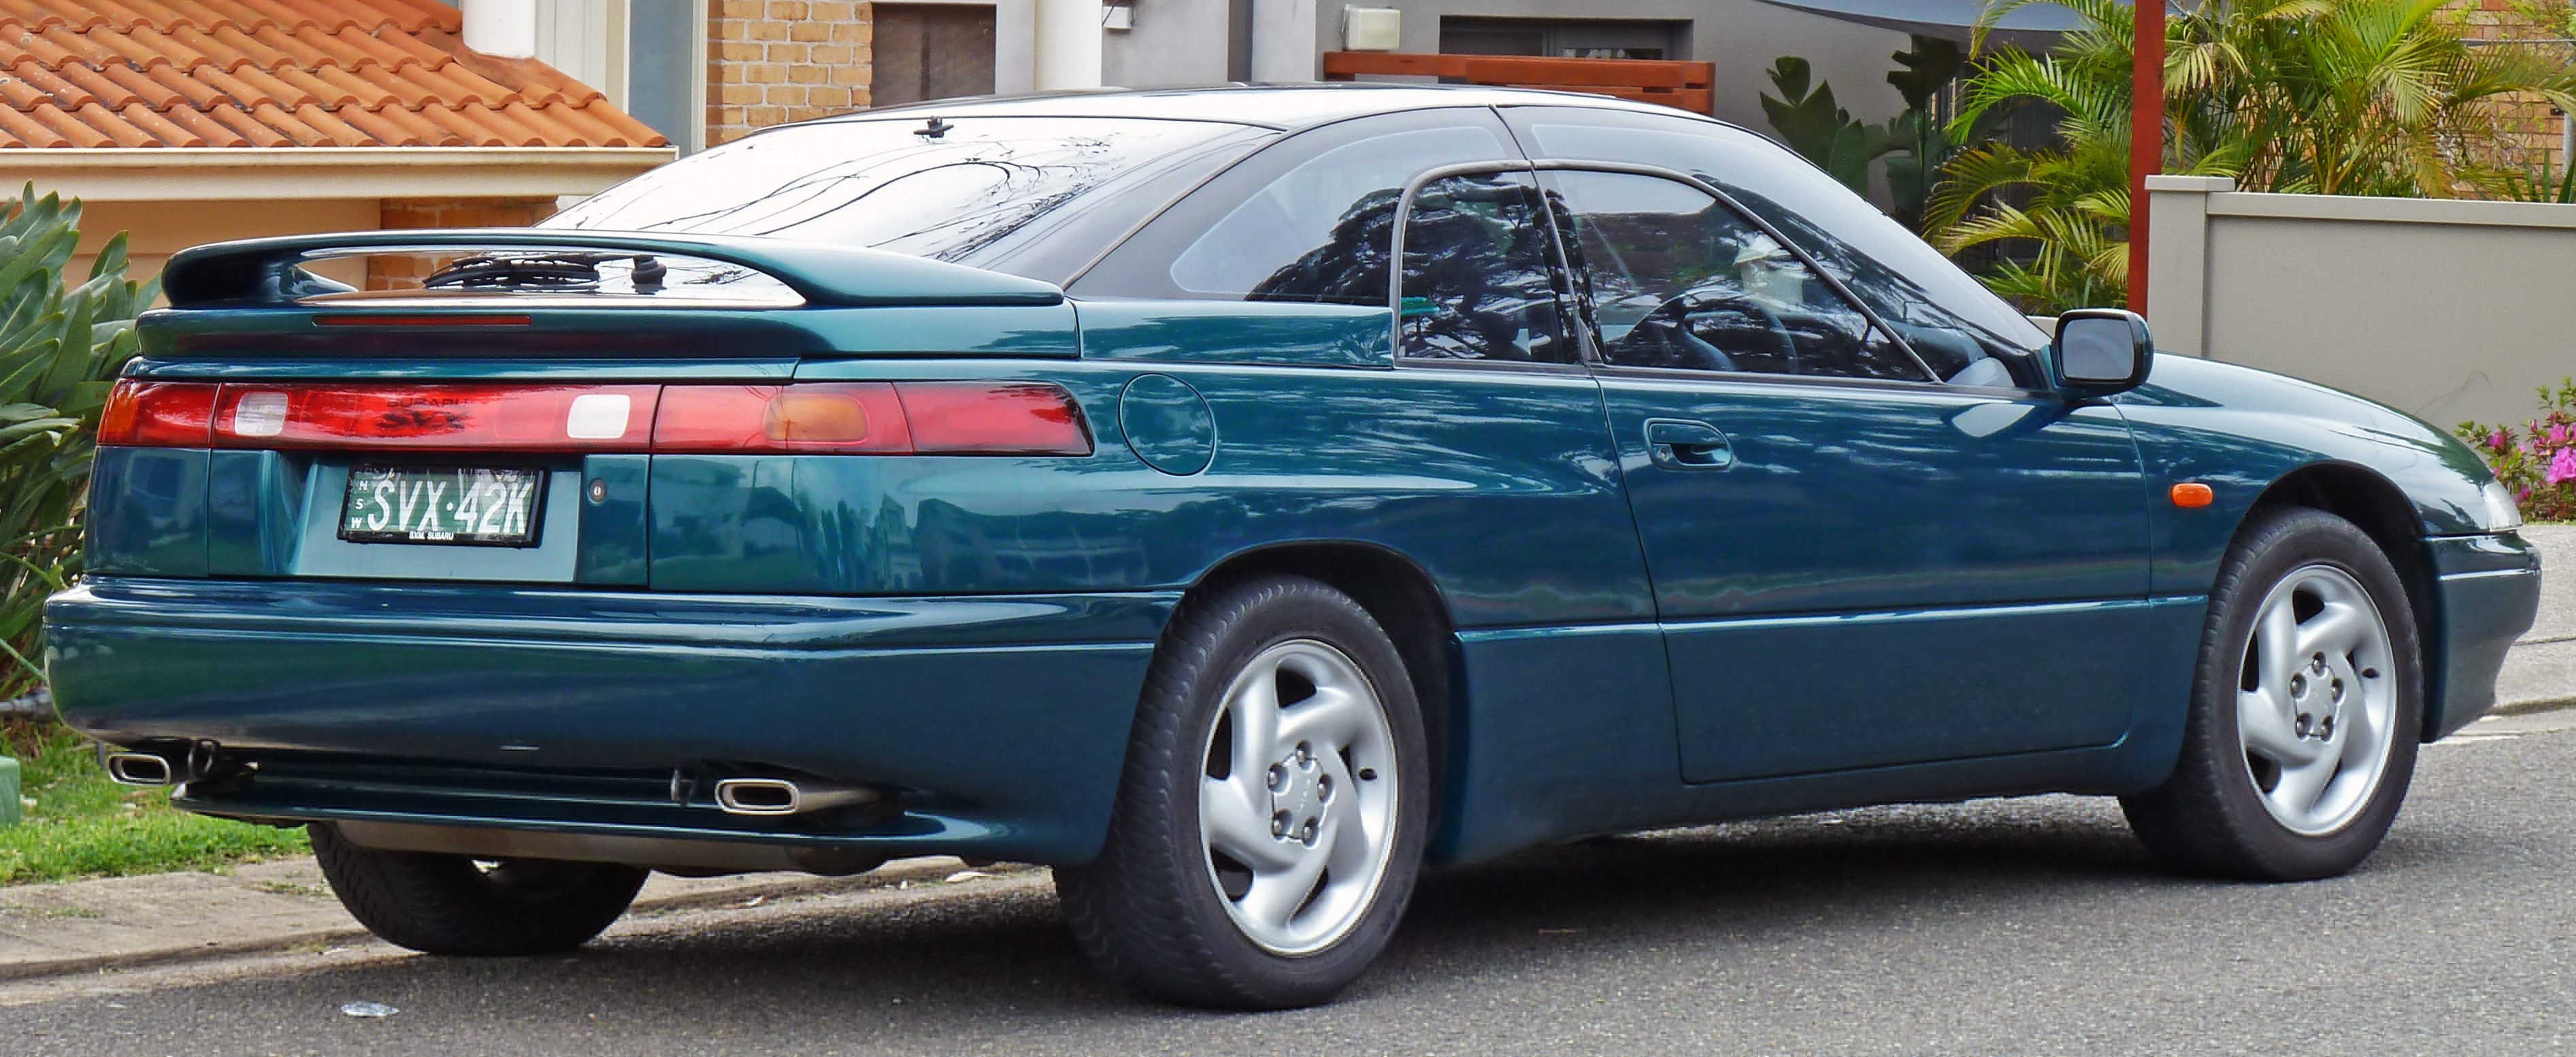 1992-1997_Subaru_SVX_coupe_02.jpg